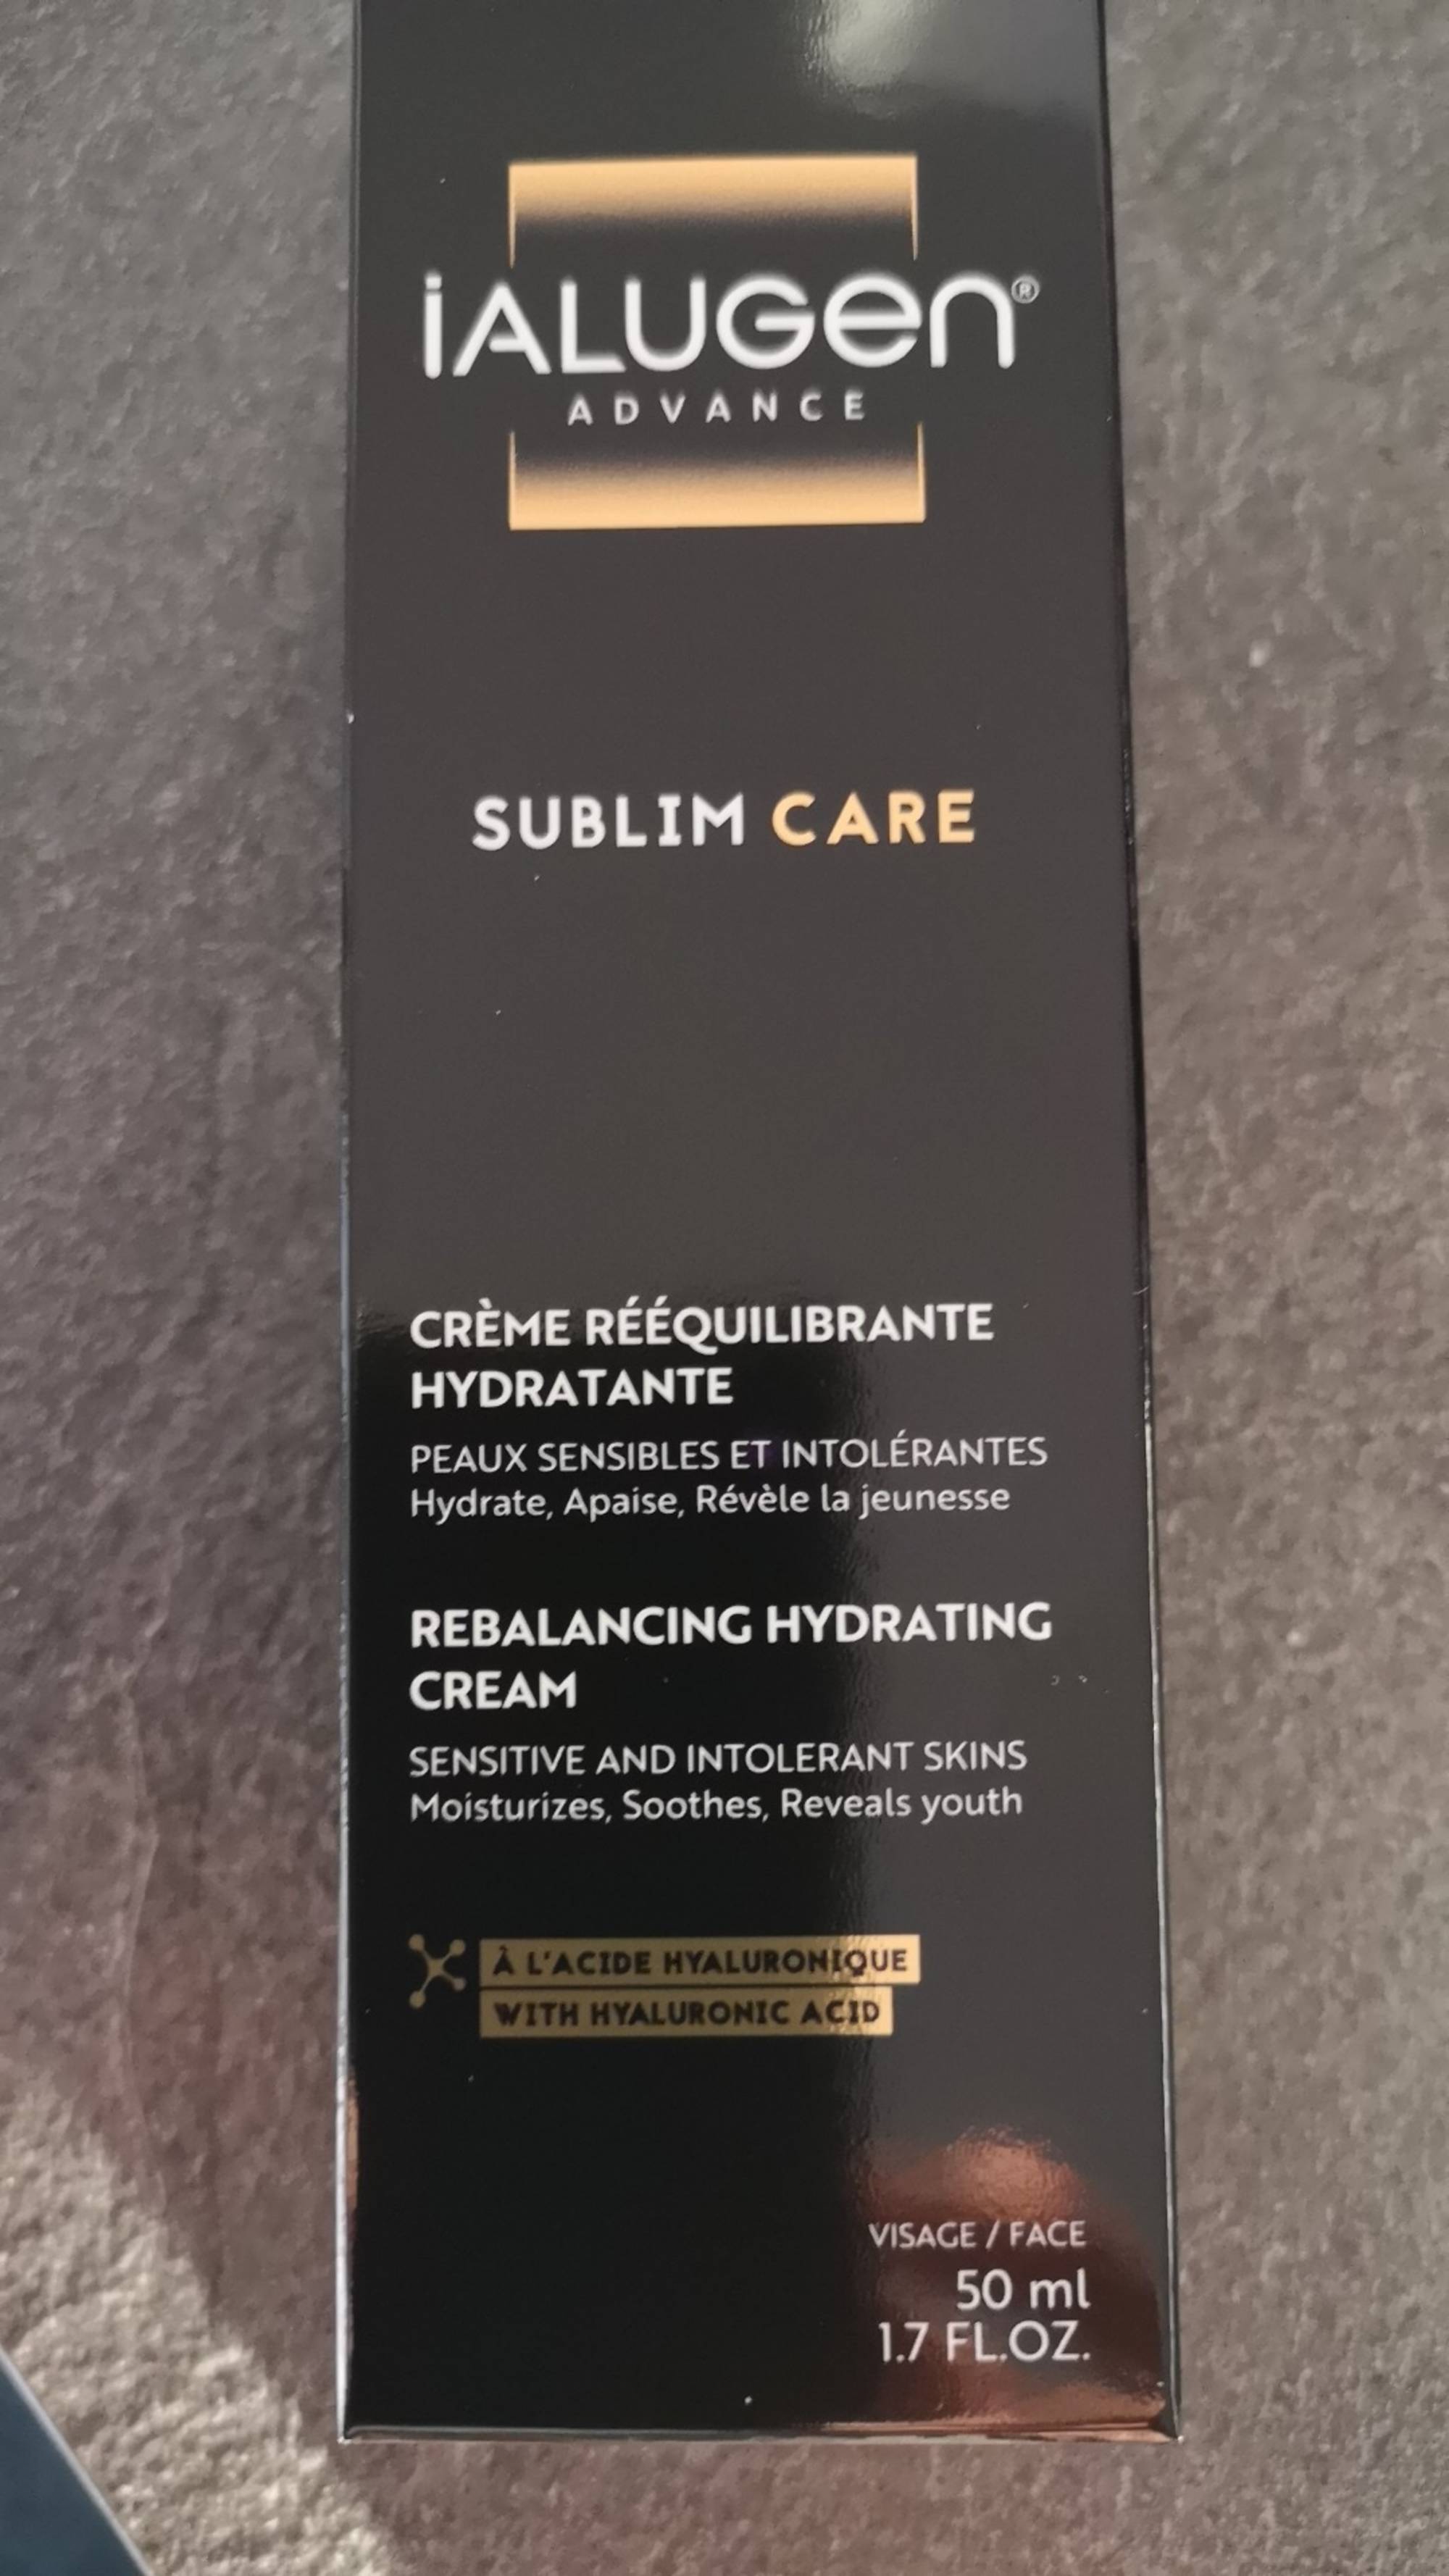 IALUGEN - Sublim care - Crème rééquilibrante hydratante